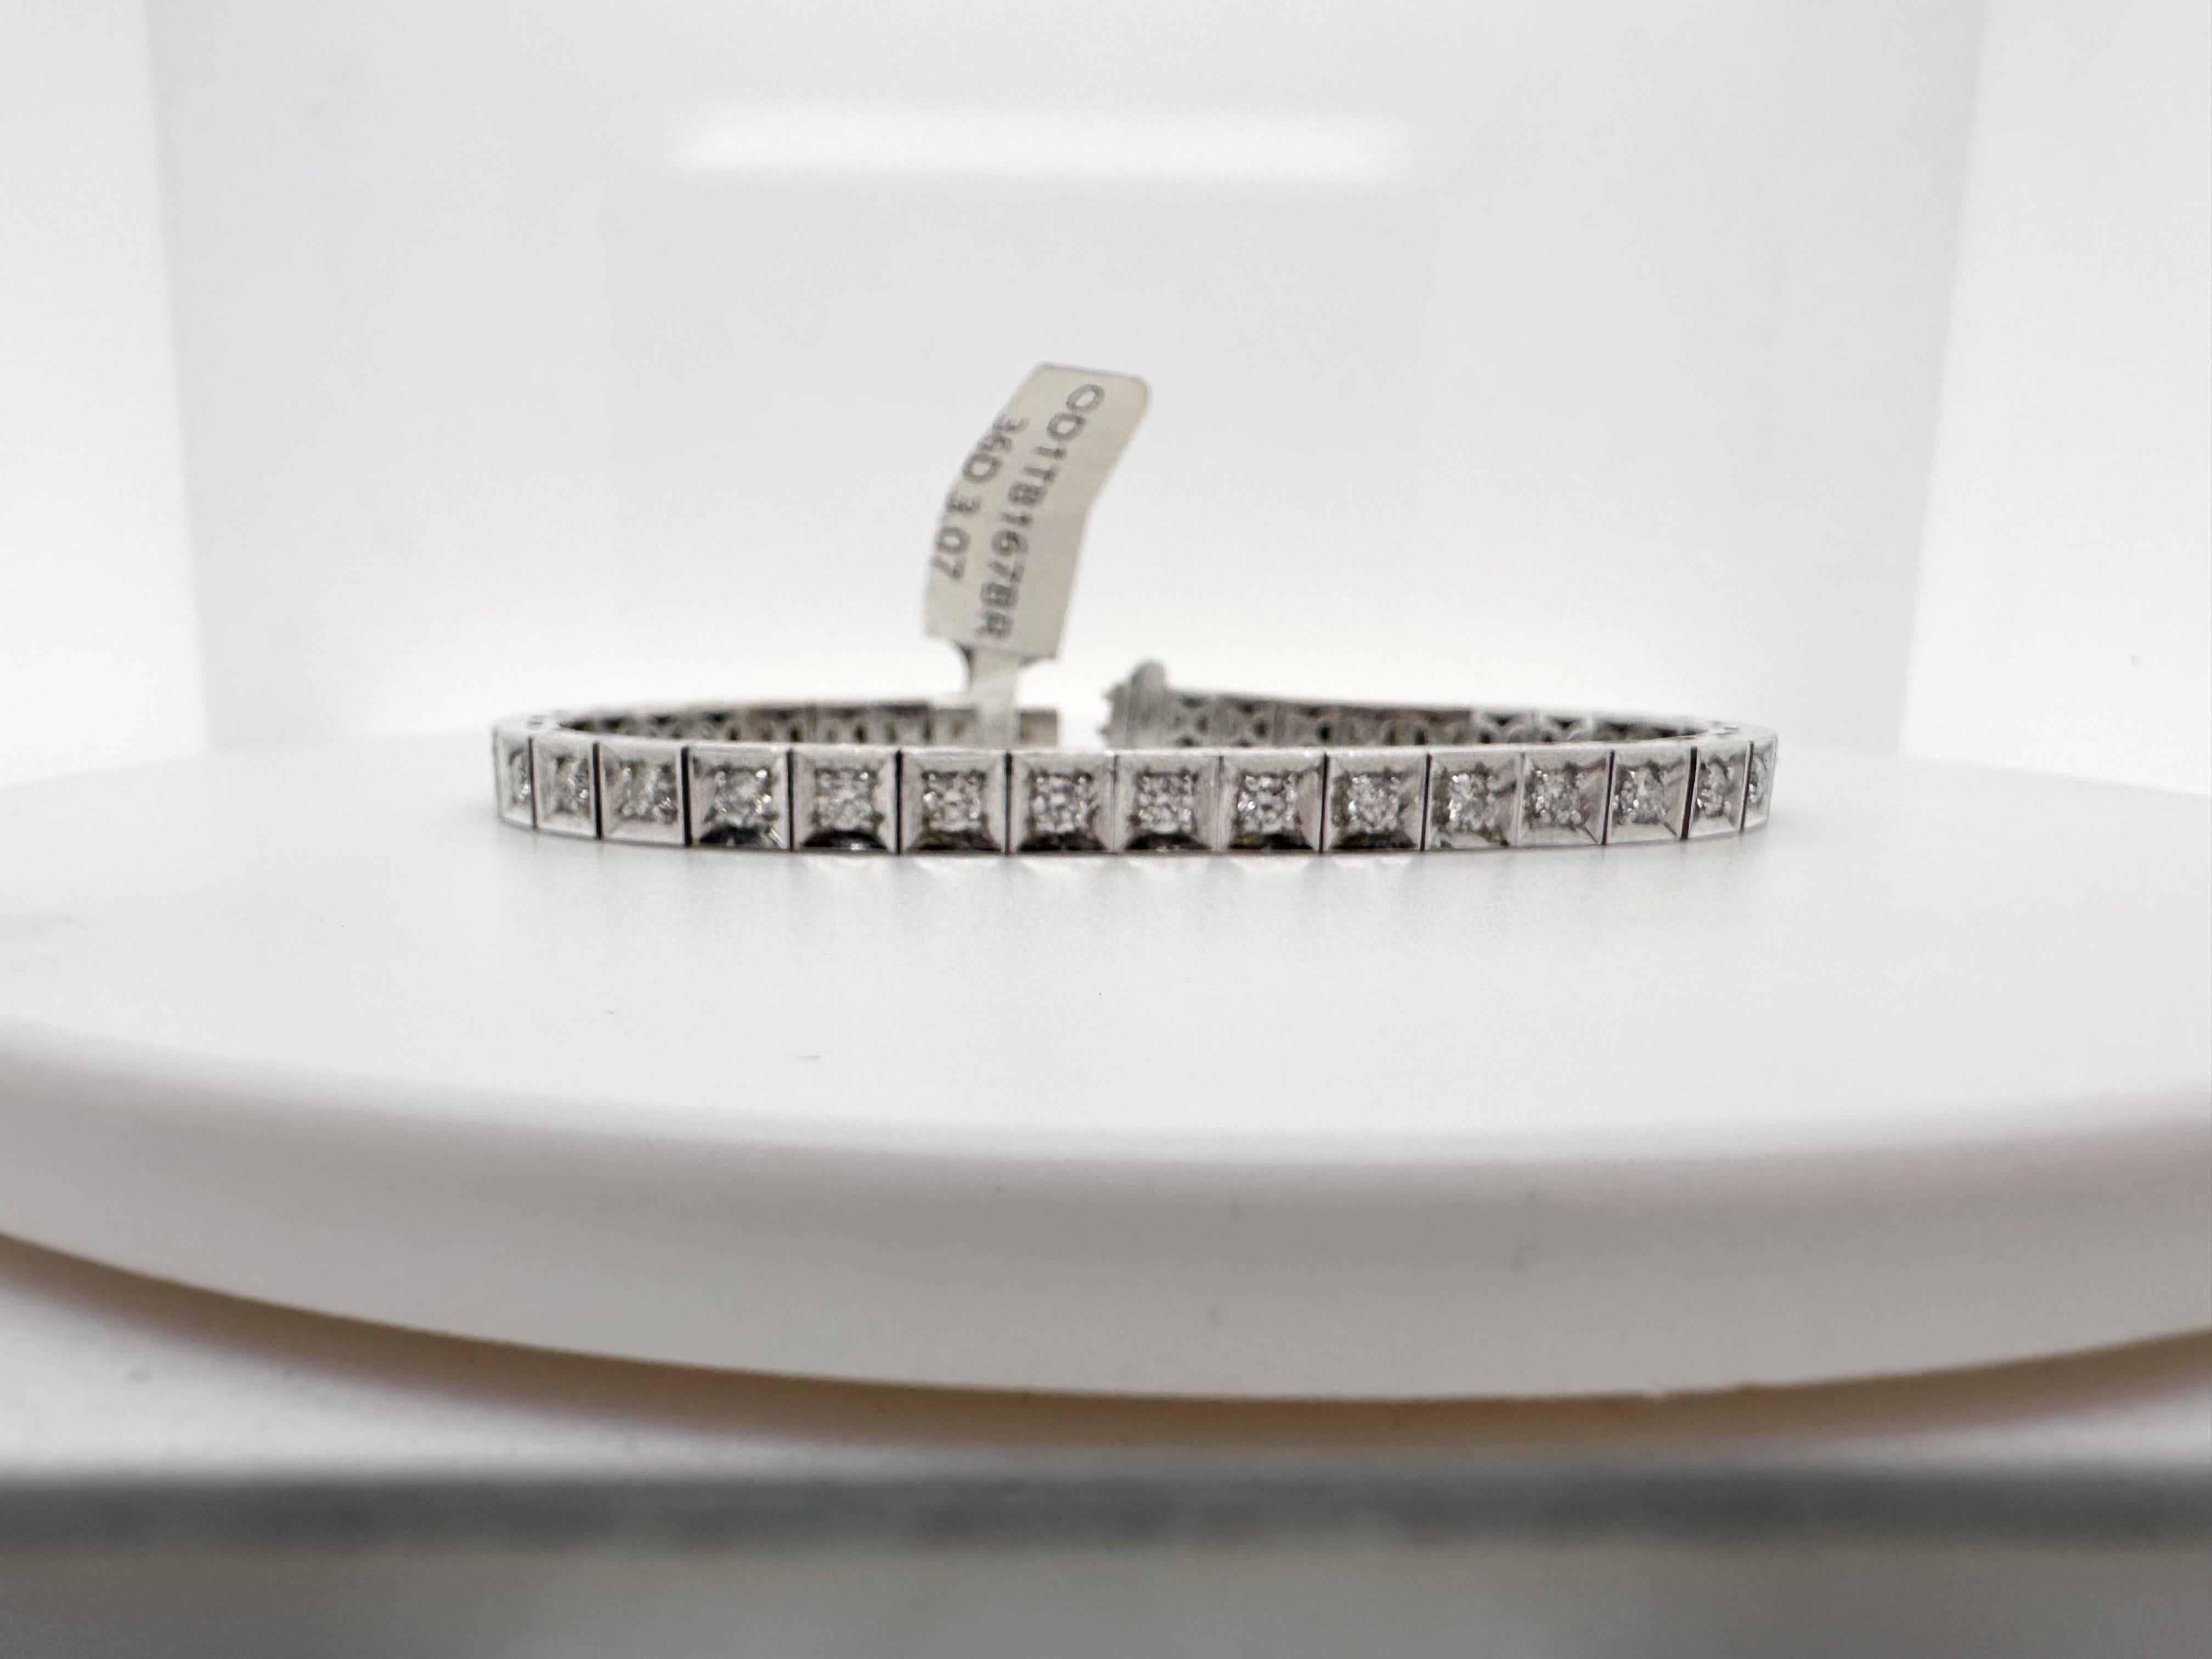 Bracelet classique de diamants carrés en or blanc 18KT.

Type de métal : 18KT
Naturel Diamant(s) : 
Couleur : F-G
Taille:Brilliante ronde
Carat : 3.07ct
Clarté : VS-SI (moyenne)
Article : T11400
Taille:7.50